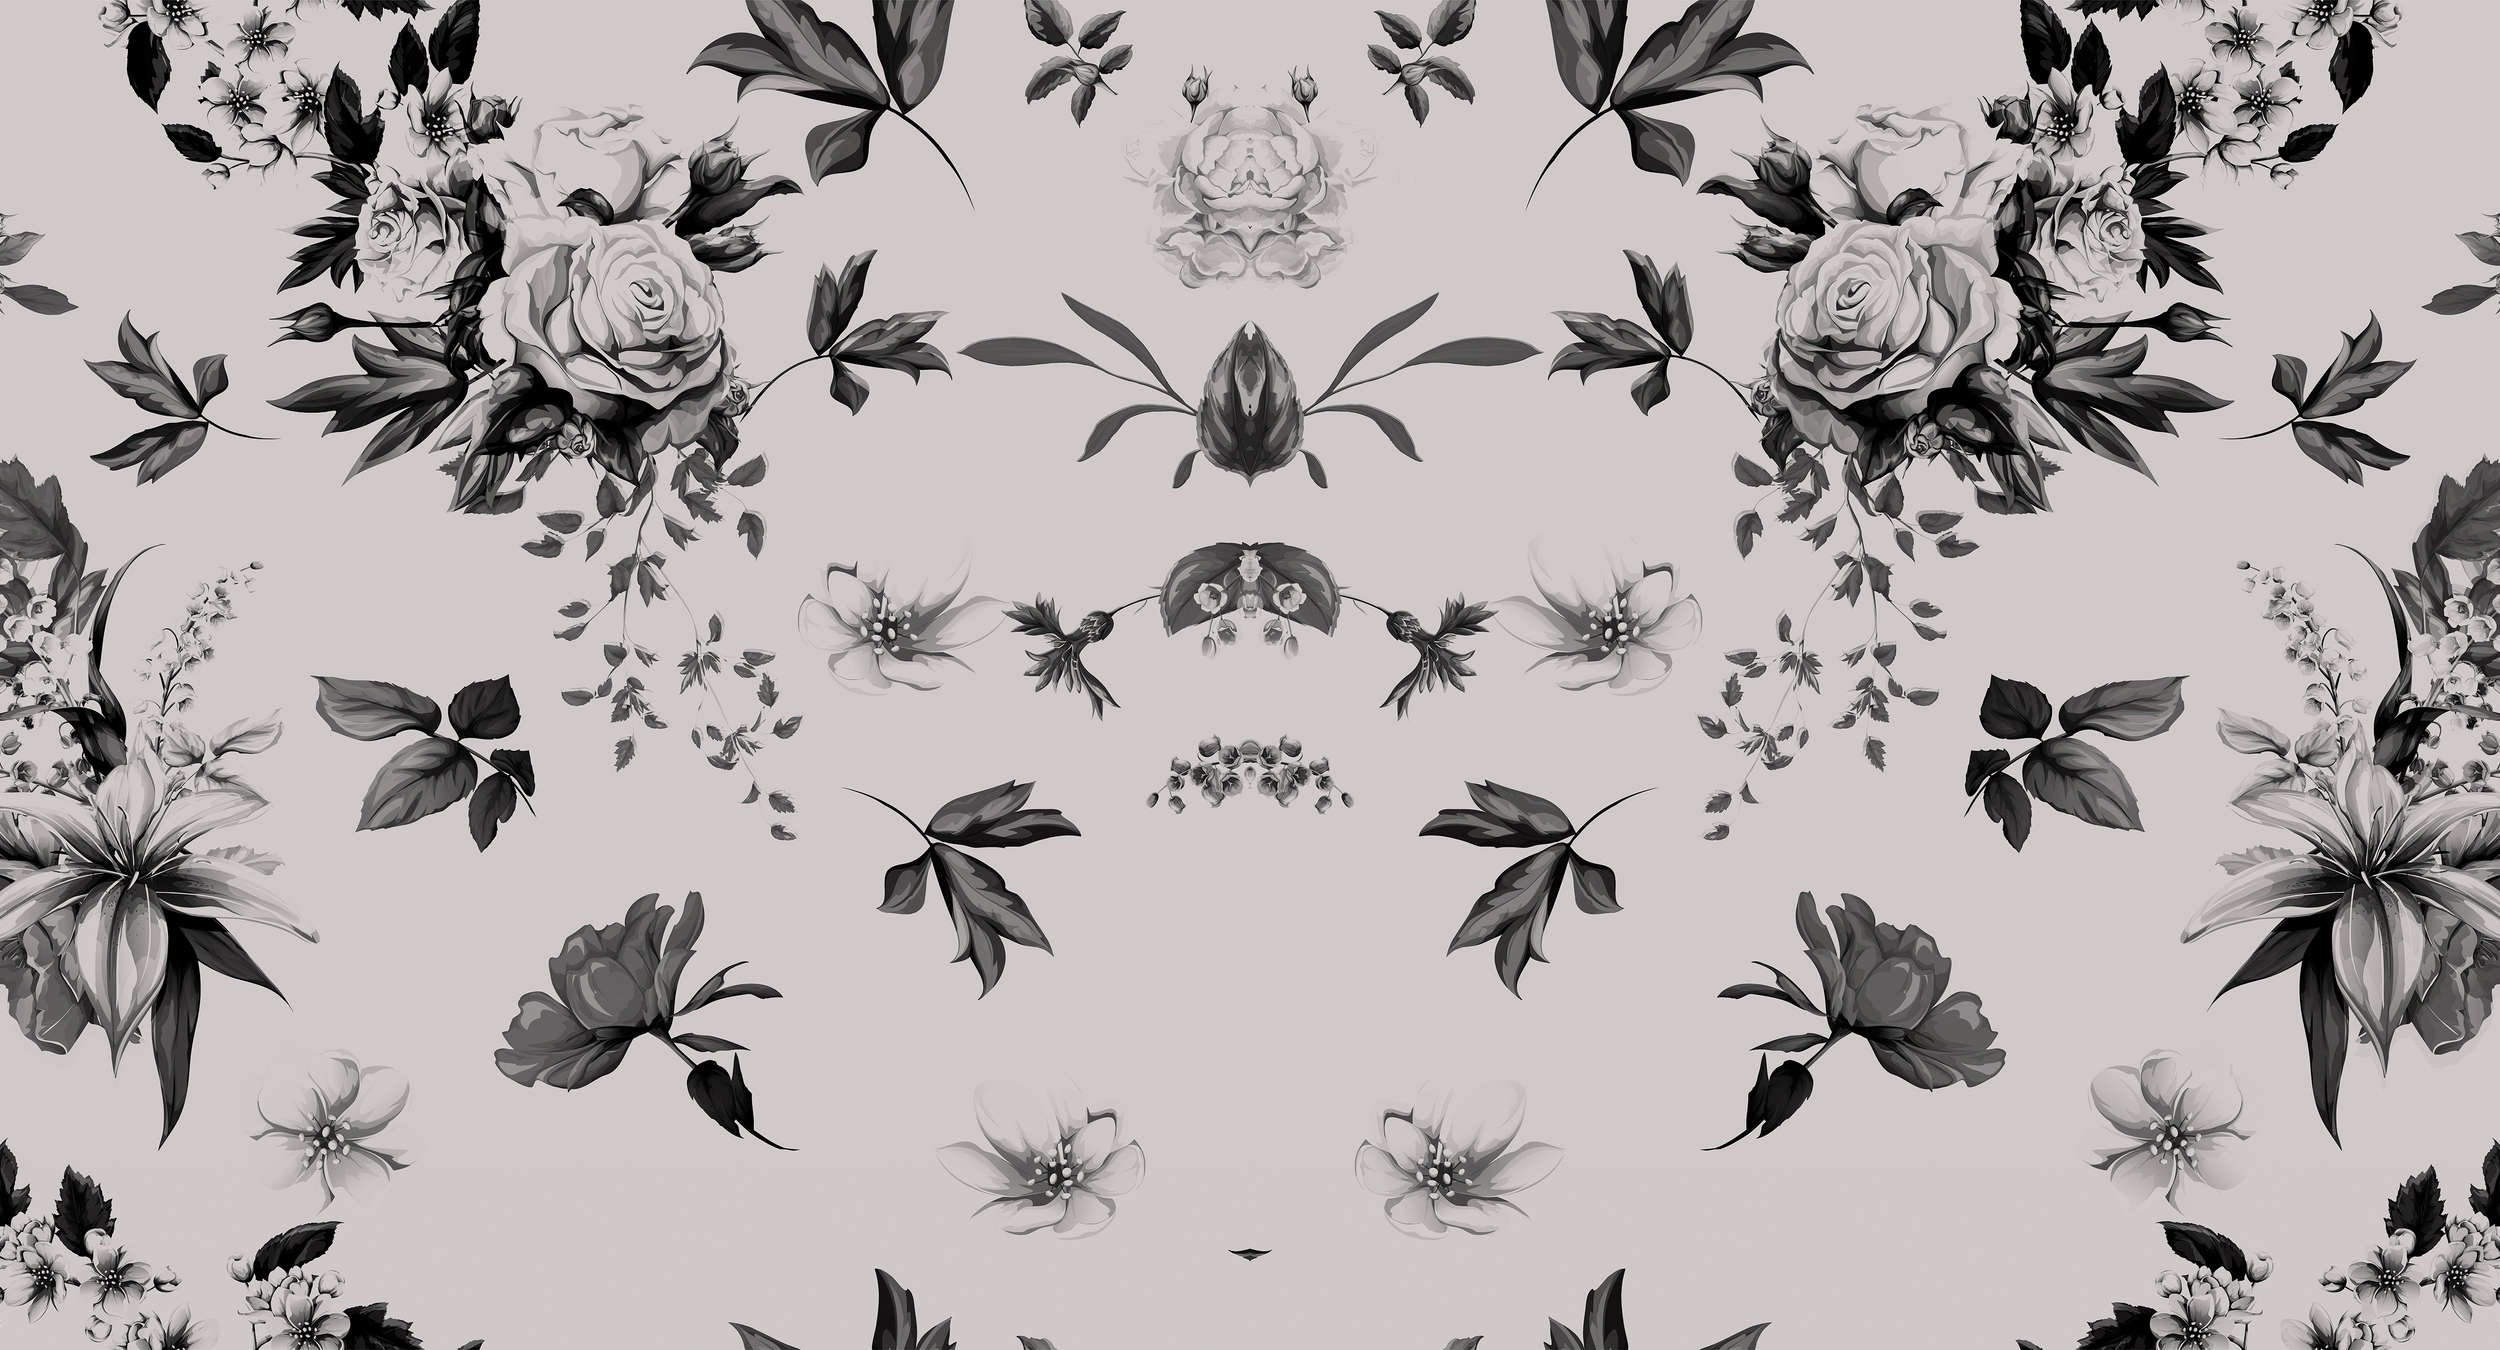             Fototapete Rosen & Blumen Design gespiegelt – Grau, Schwarz
        